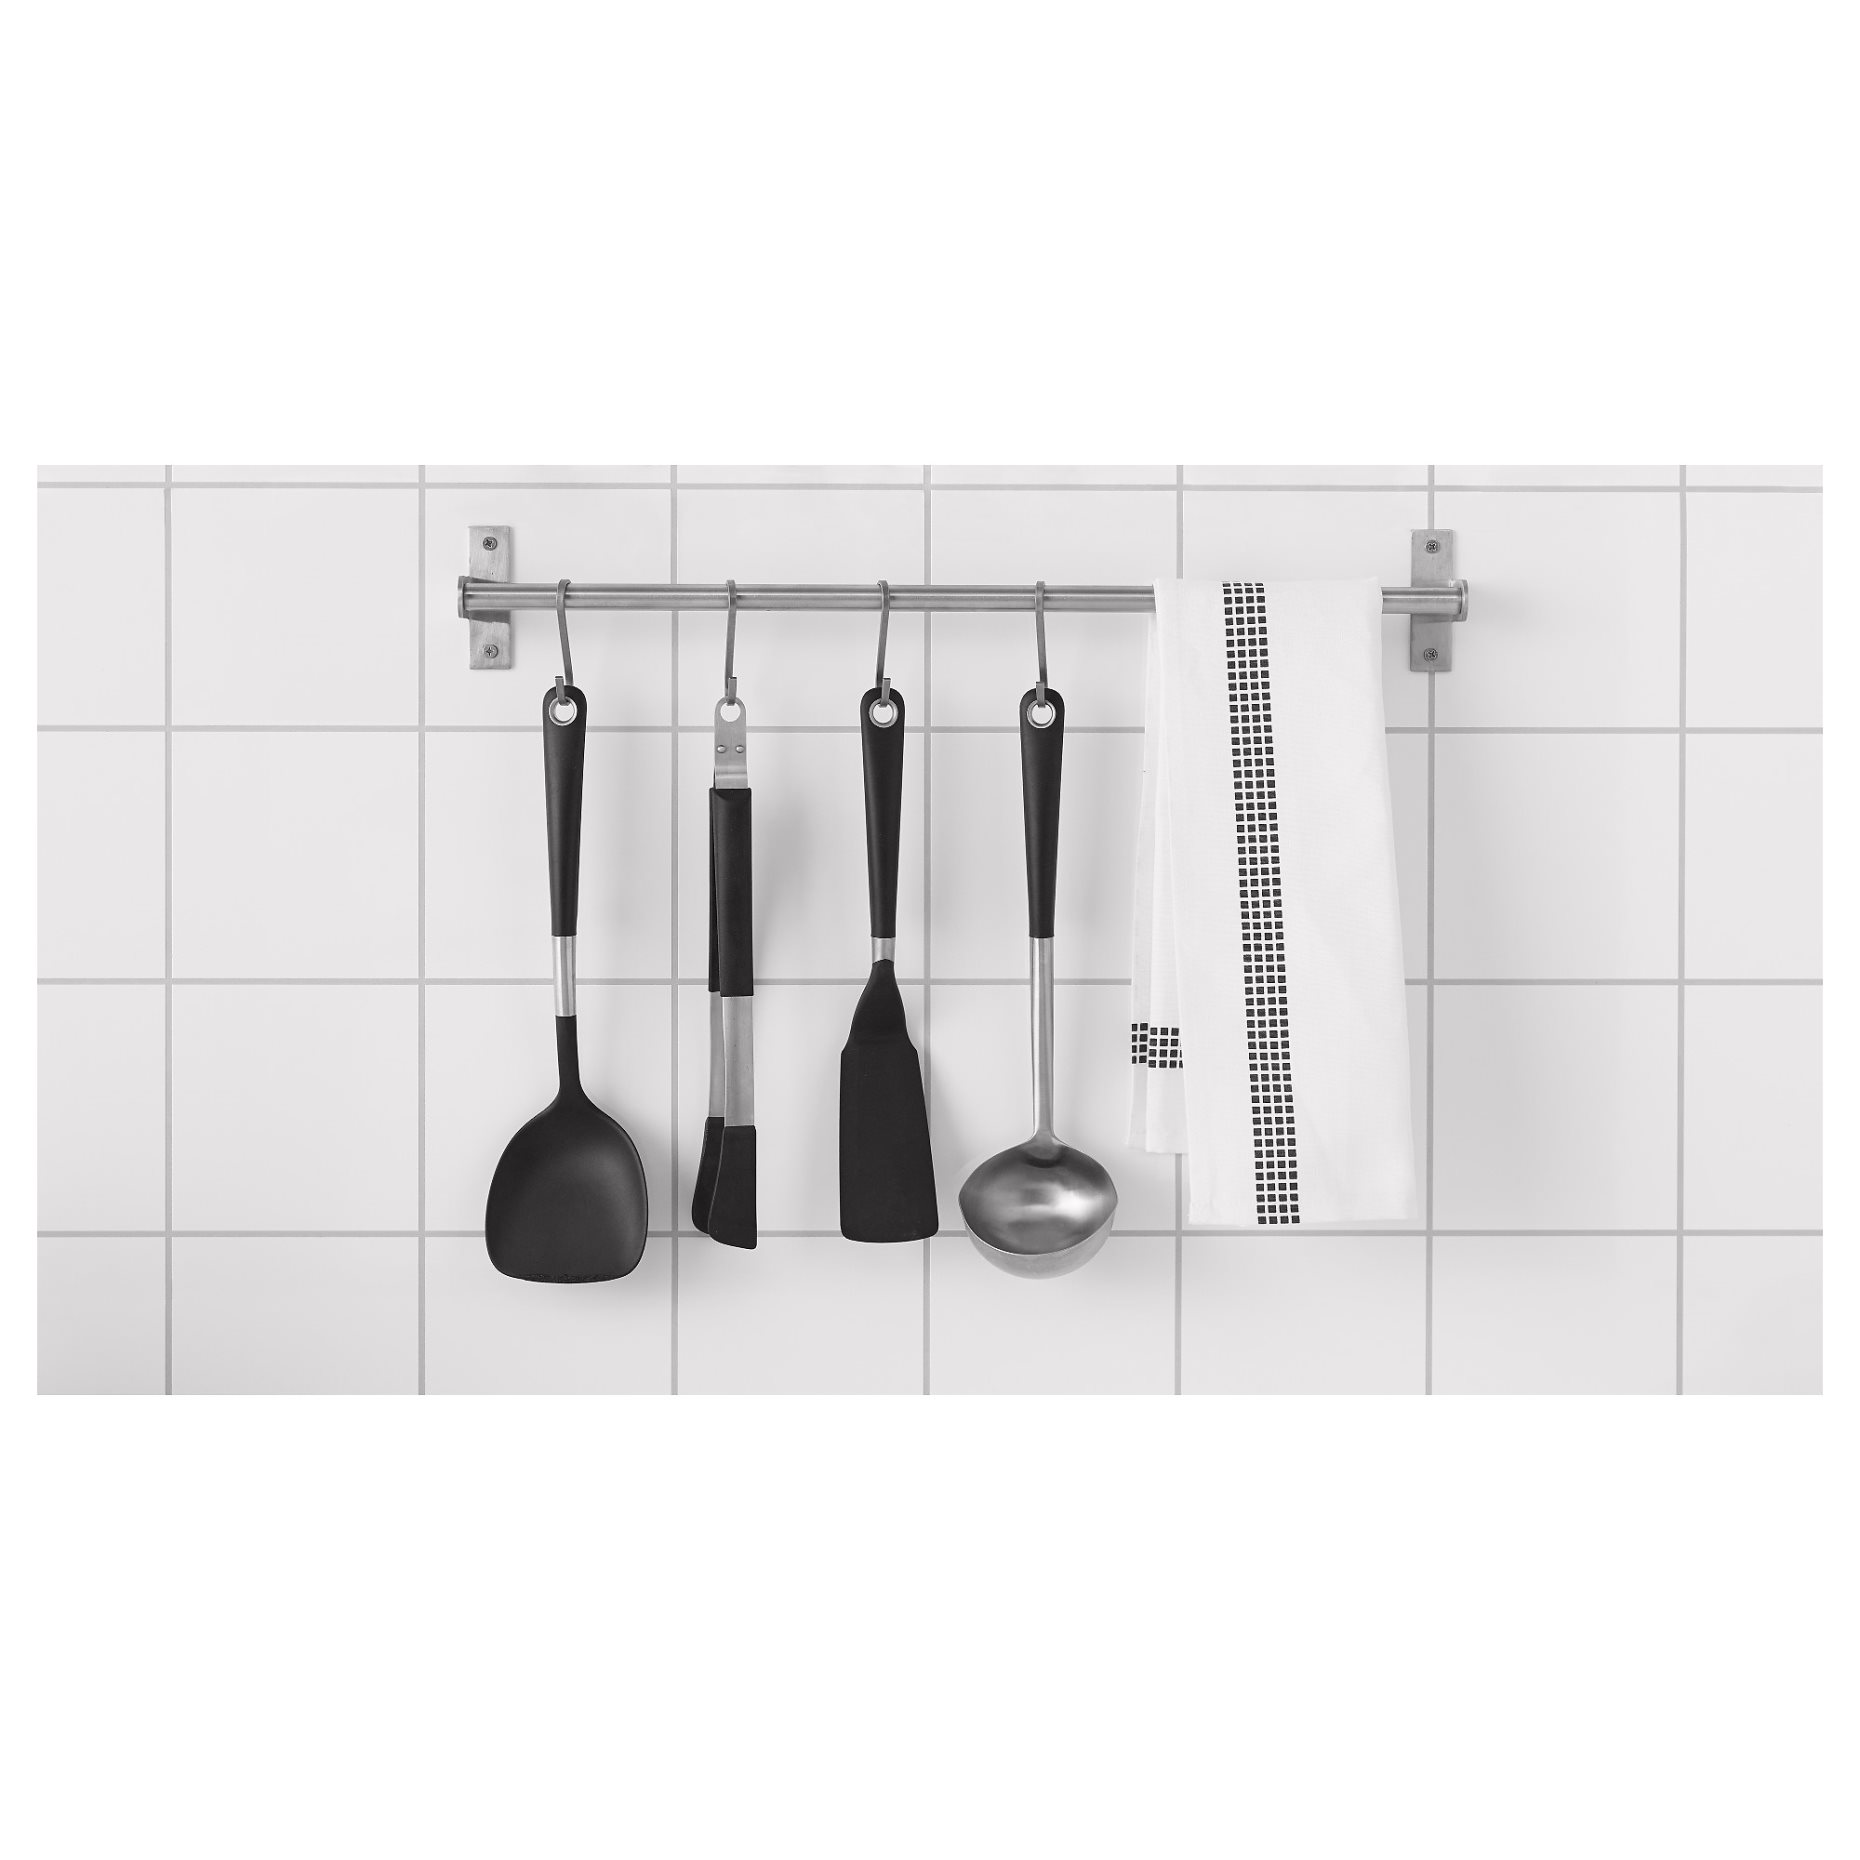 IKEA 365+, cooking tweezers, 801.494.60